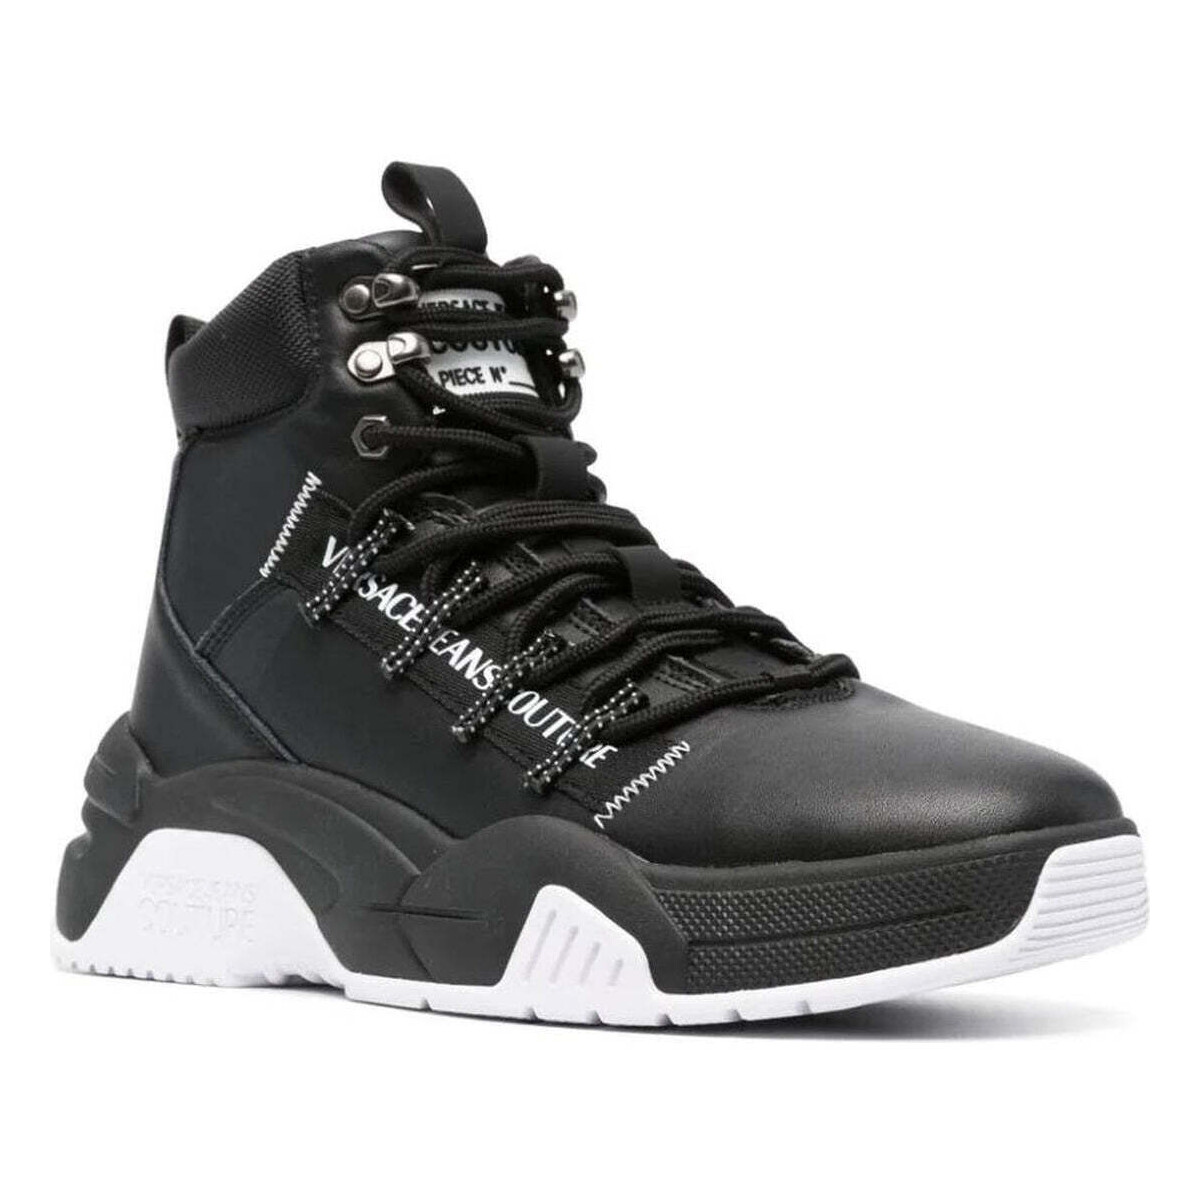 Chaussures Homme zapatillas de running Skechers hombre minimalistas talla 38 baratas menos de 60 stargaze sneakers black Noir